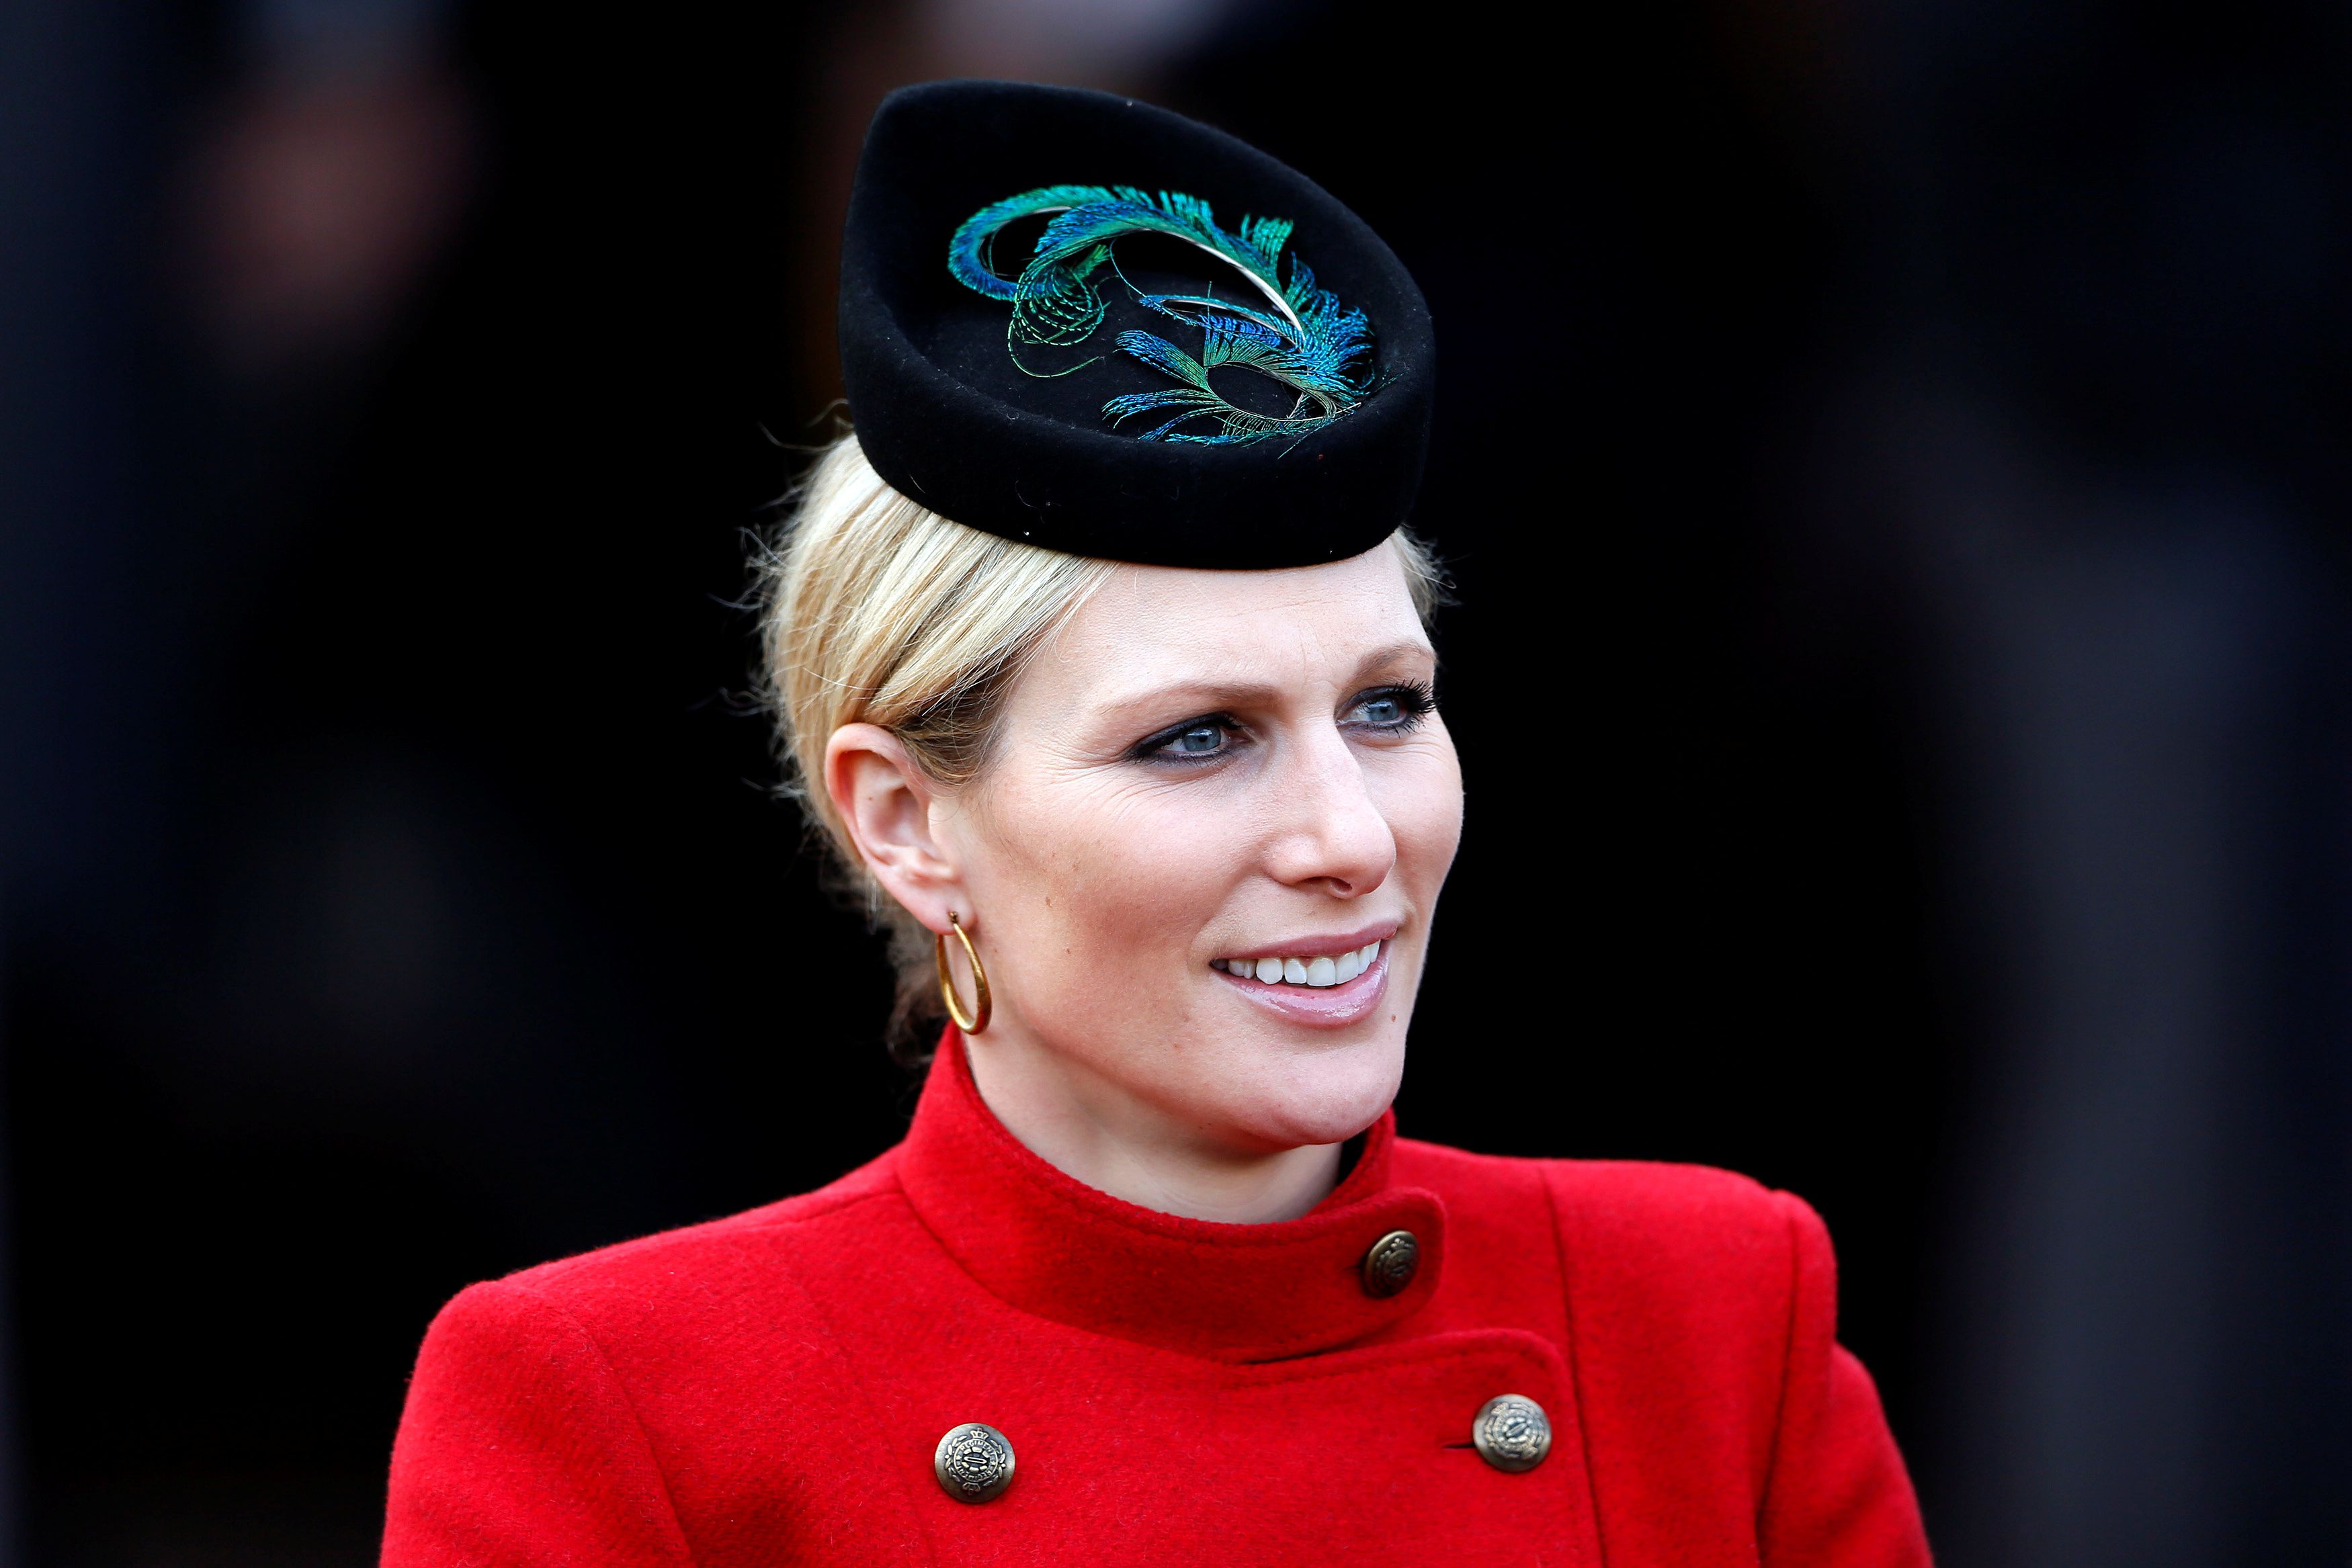 Zara Phillips, la hija menor de la princesa Ana de Reino Unido, está casada con el ex jugador de rugby británico Mike Tindall, y tiene dos hijos. No tiene títulos nobiliarios ni recibe fondos públicos ( REUTERS)